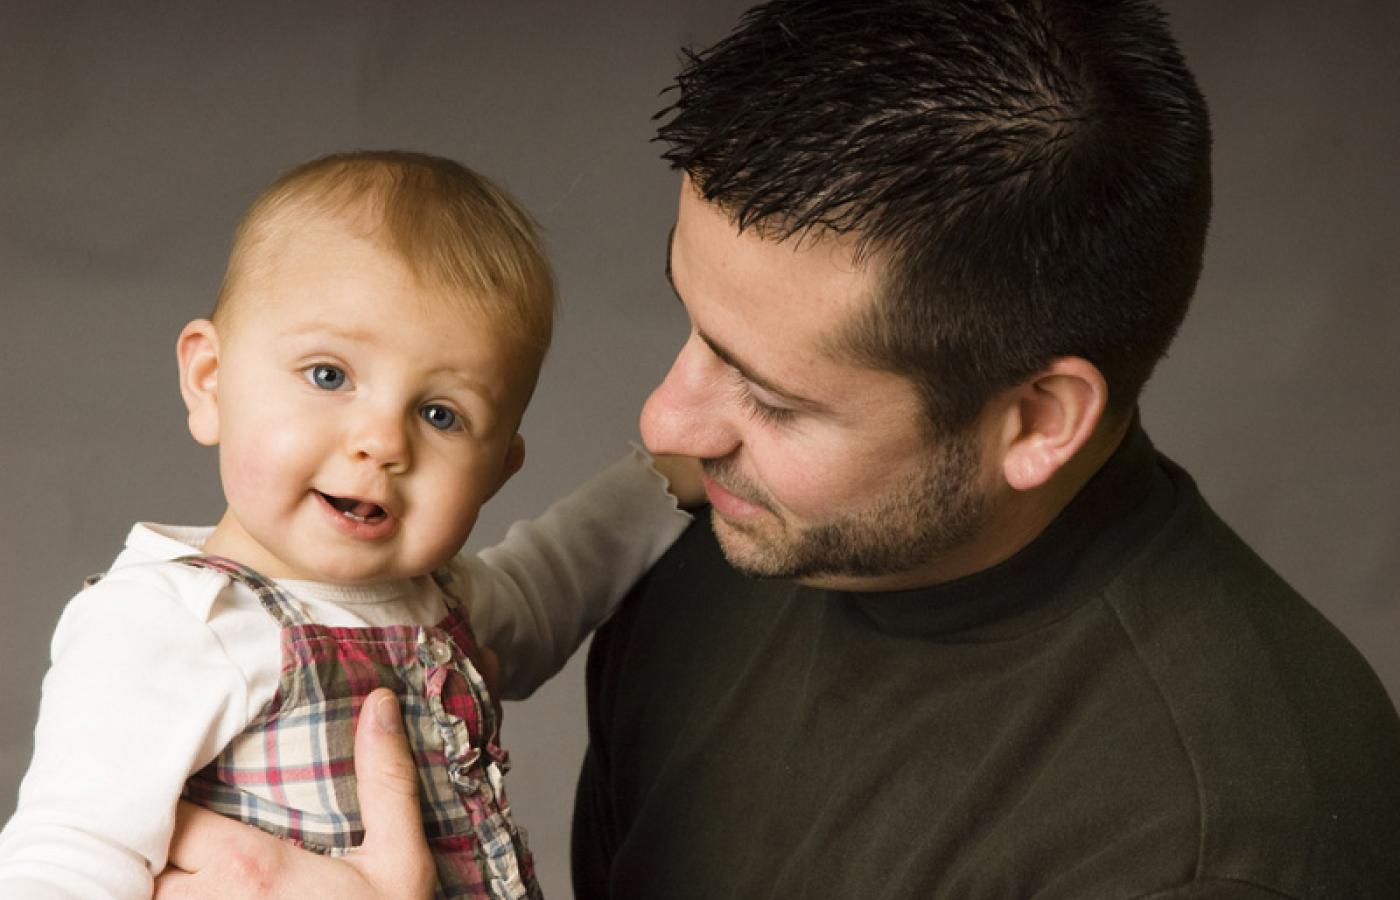 Z urlopów rodzicielskich korzysta co drugi ojciec w Hiszpanii, w Finlandii 75 proc., w Islandii 85 proc. i zaledwie 1 proc. w naszym kraju.